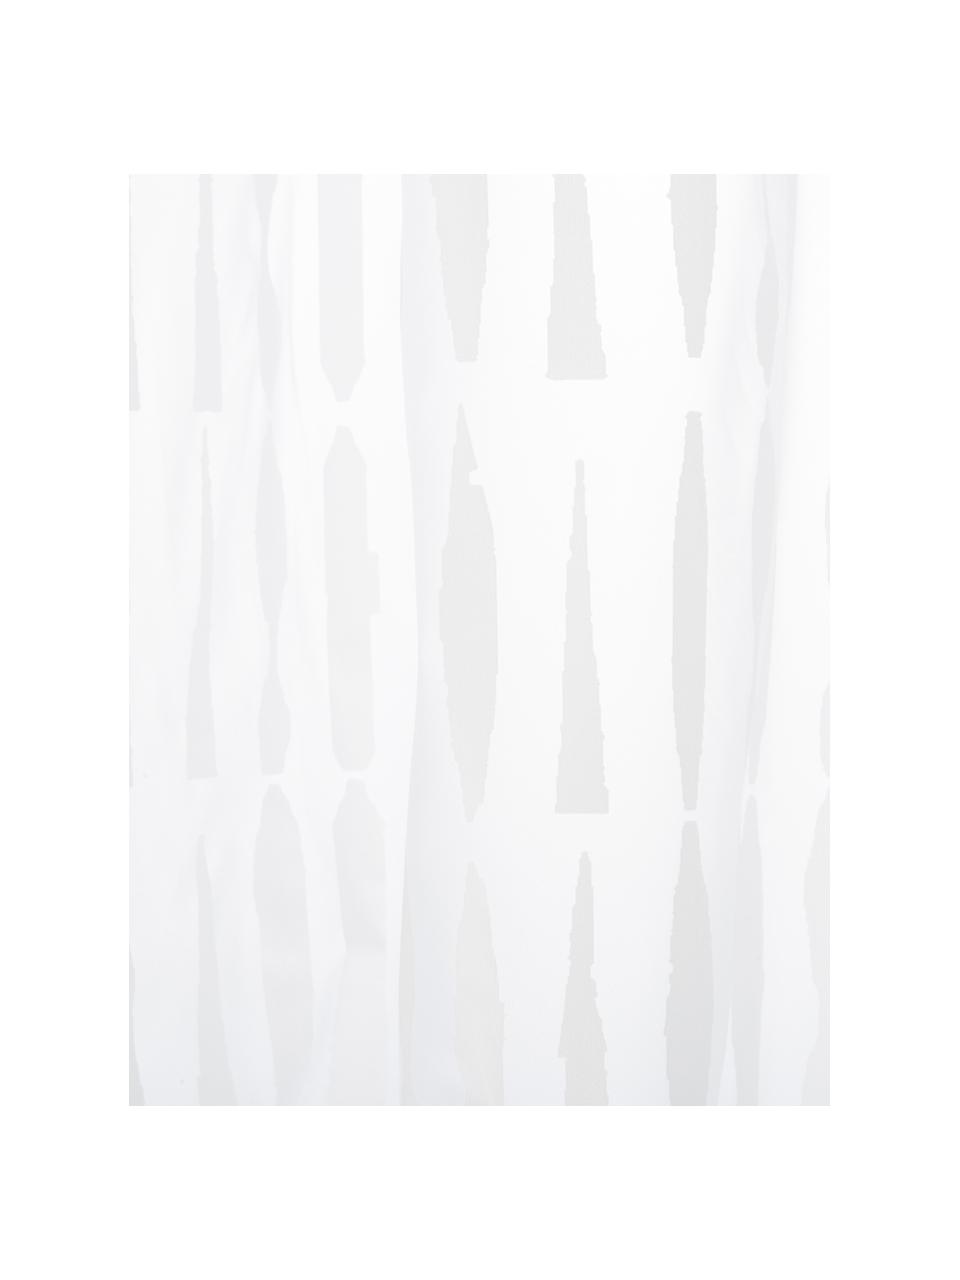 Zasłona prysznicowa Zora, Eko tworzywo sztuczne (PEVA), bez PVC
Produkt wodoodporny, Transparentny, biały, S 180 x D 200 cm